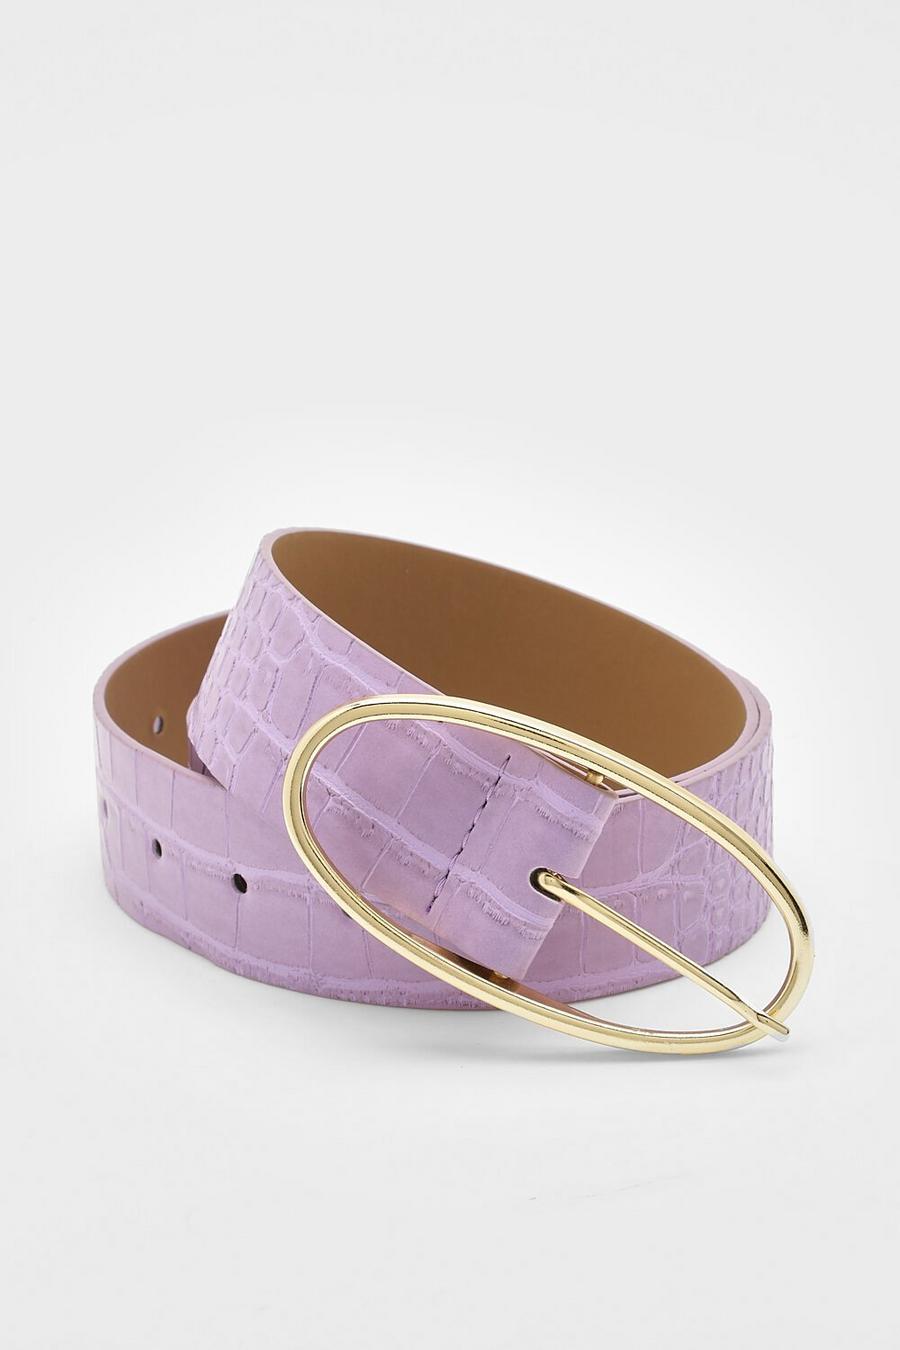 Cinturón de cuero sintético con acabado de cocodrilo, Lilac viola